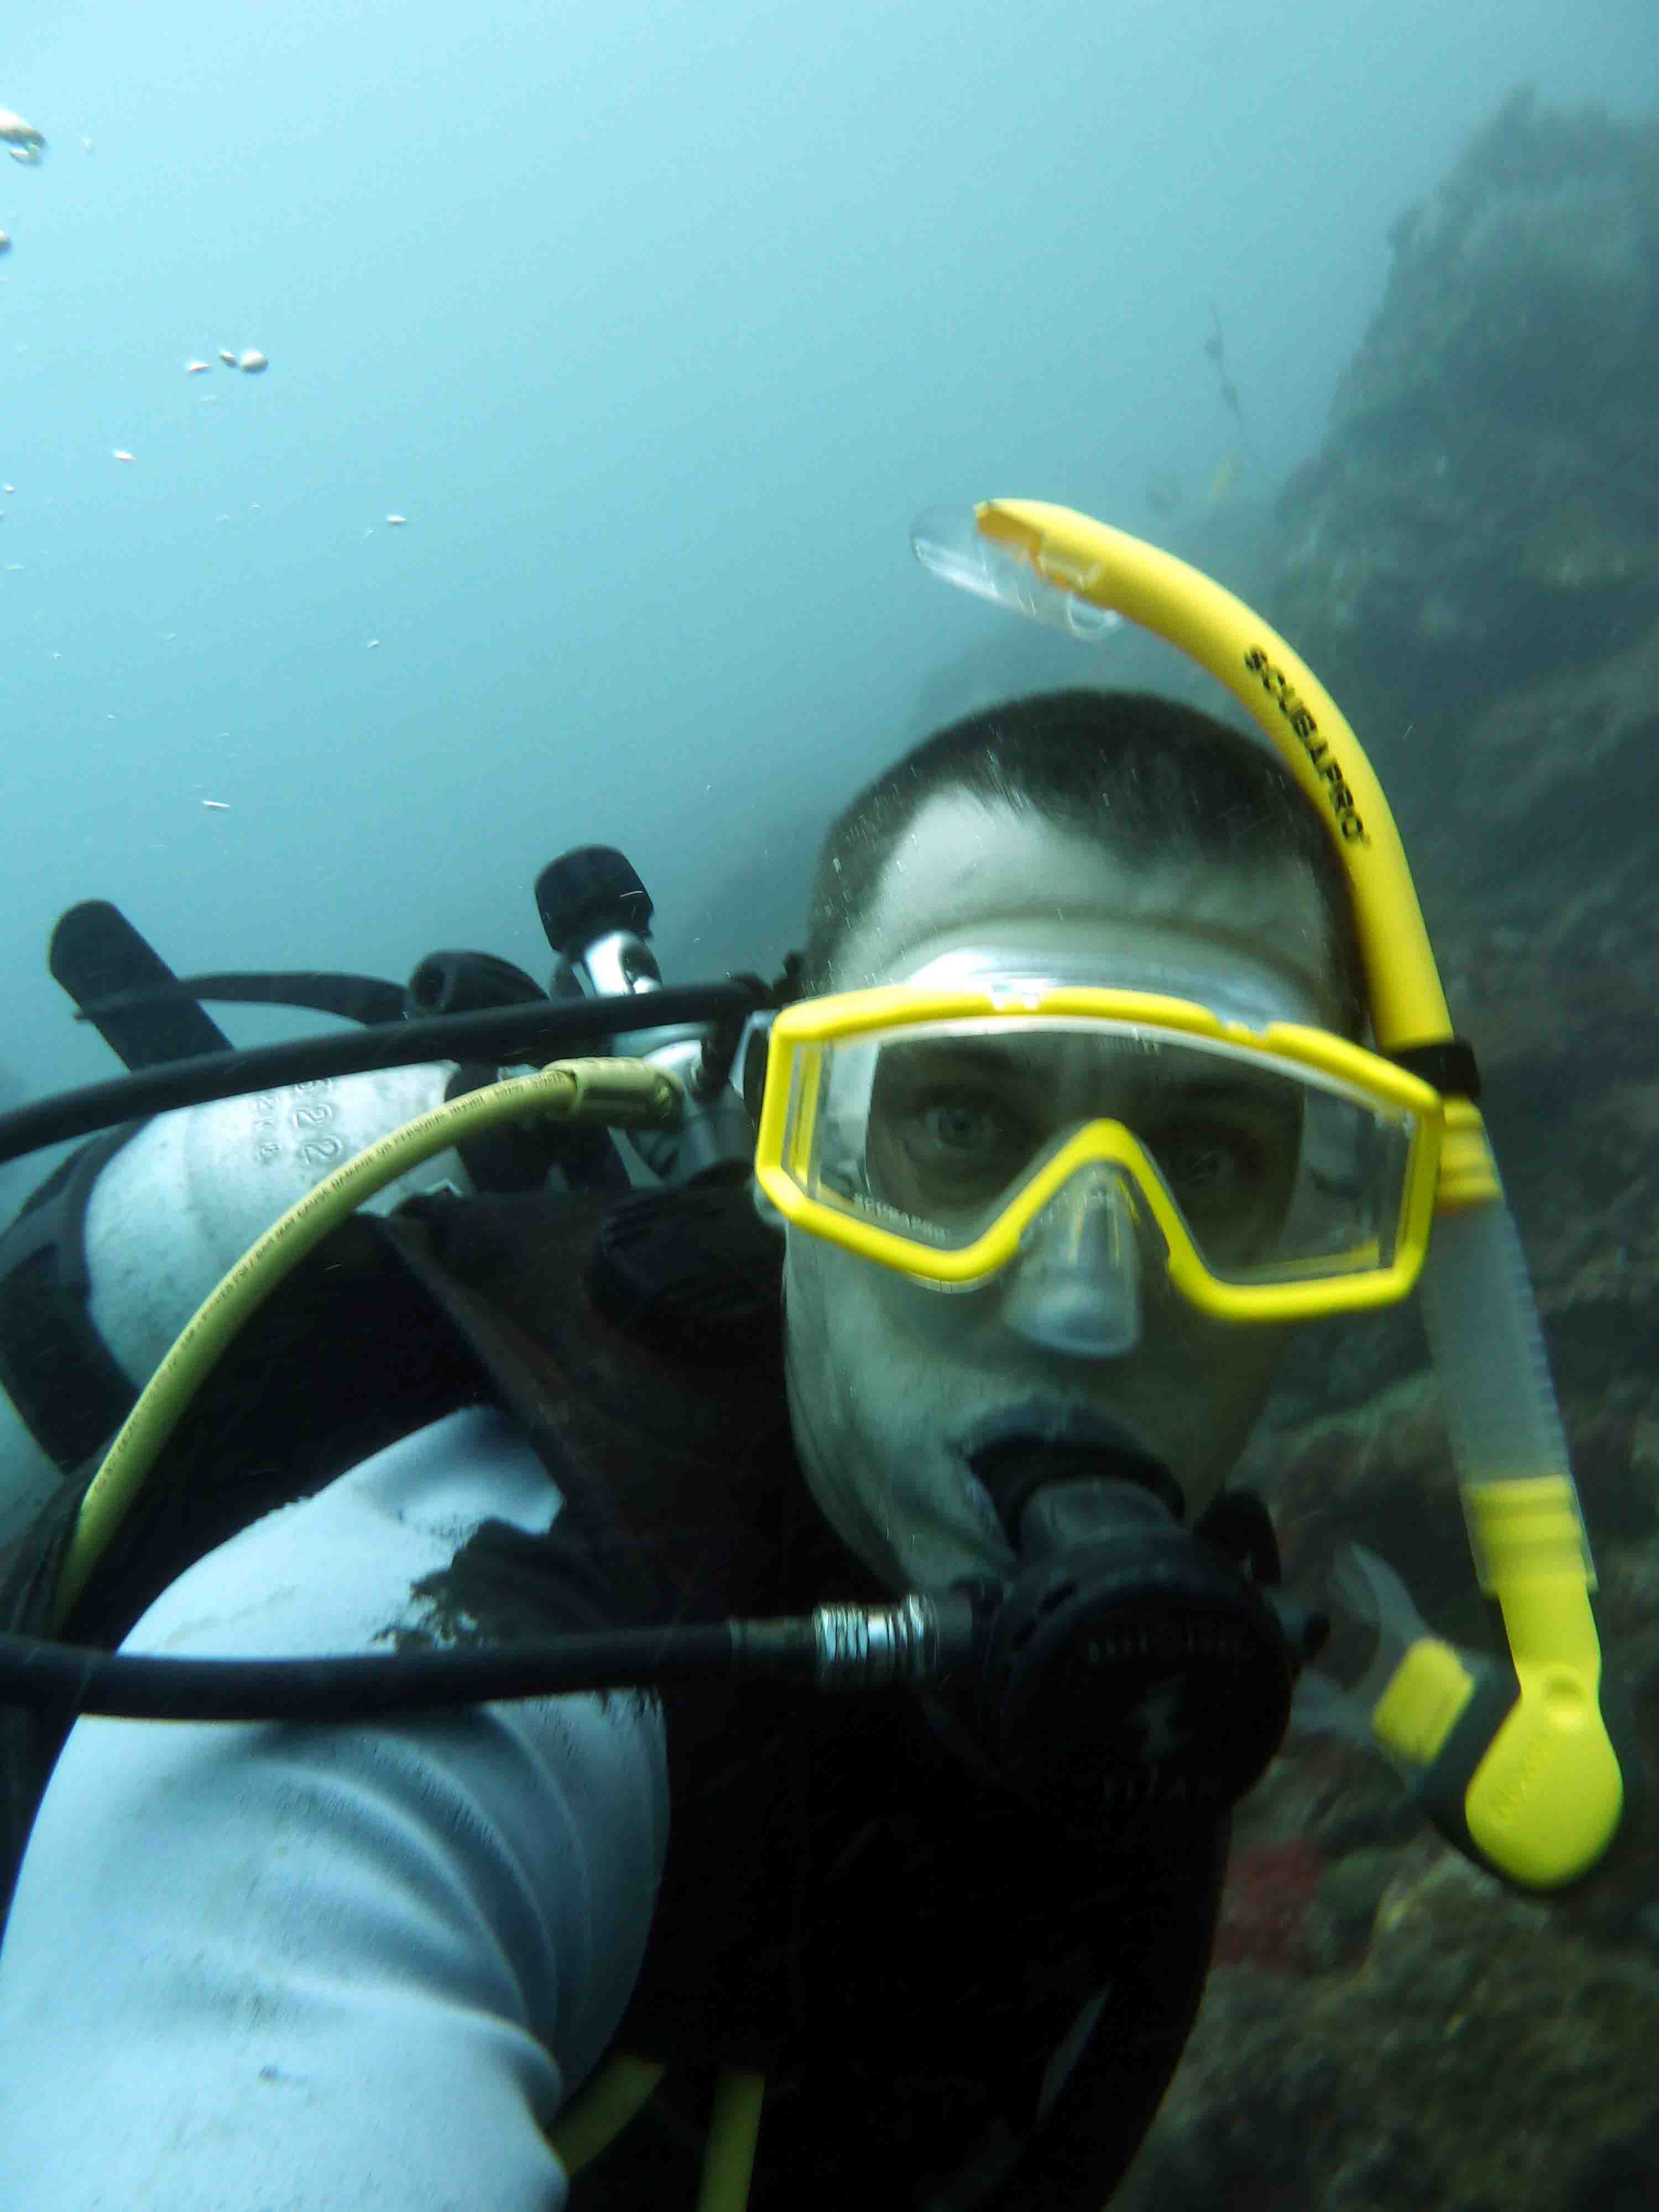 Thailand - Scuba Diving Self-portrait